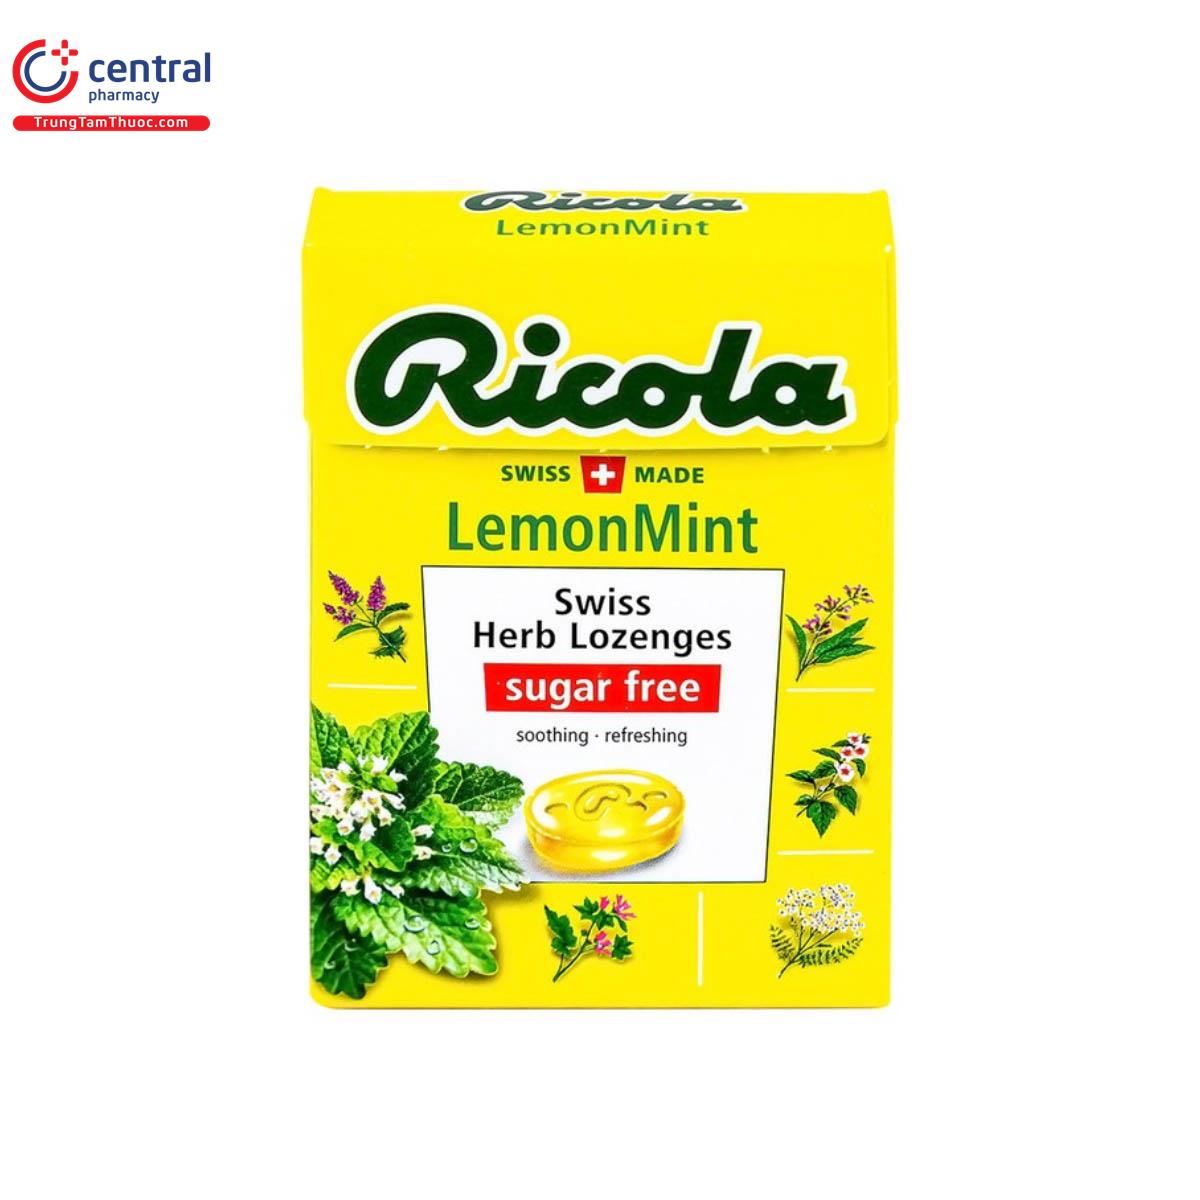 Kẹo ngậm không đường Ricola Lemont Mint 40g